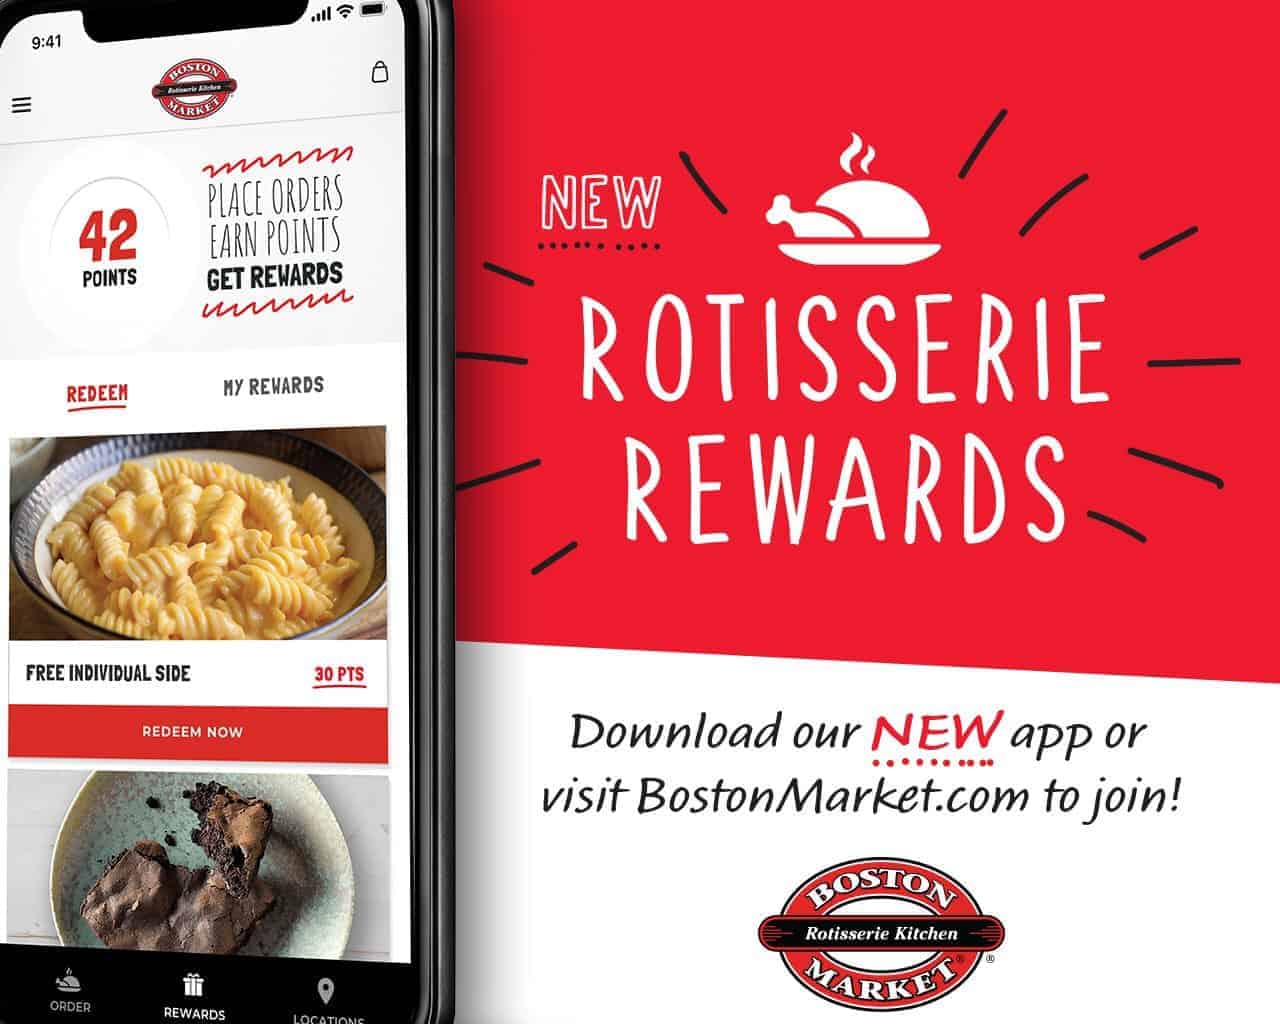 Boston Market rotisserie rewards